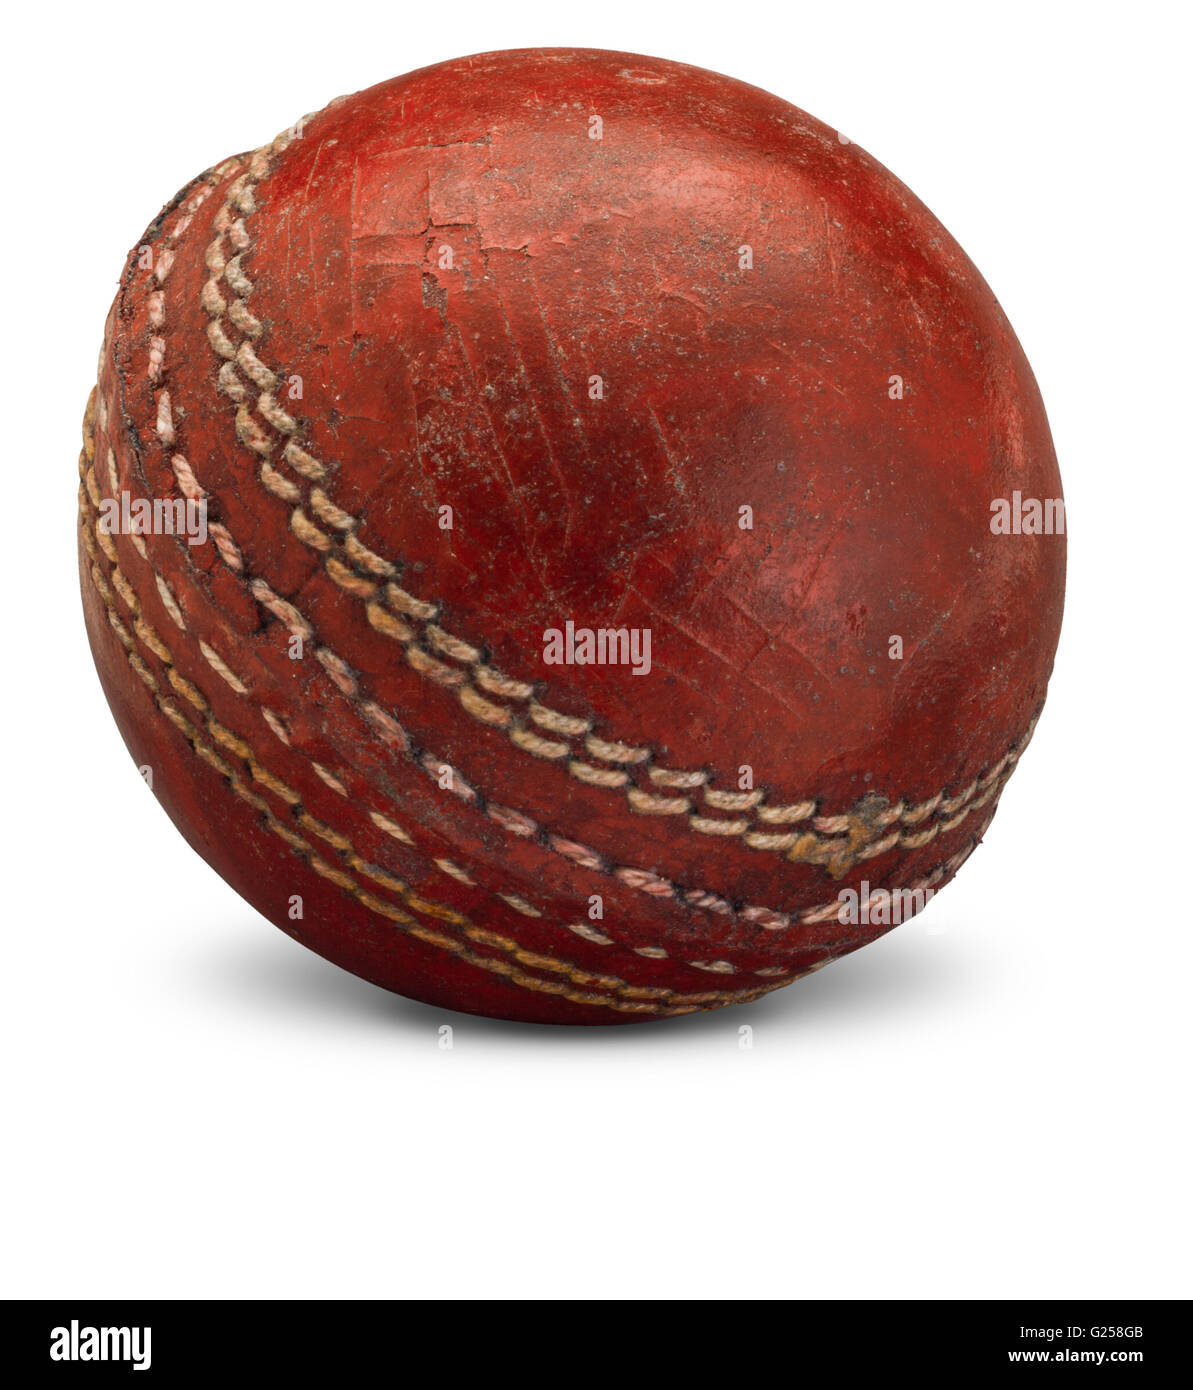 Sfera di cricket isolato su sfondo Foto Stock